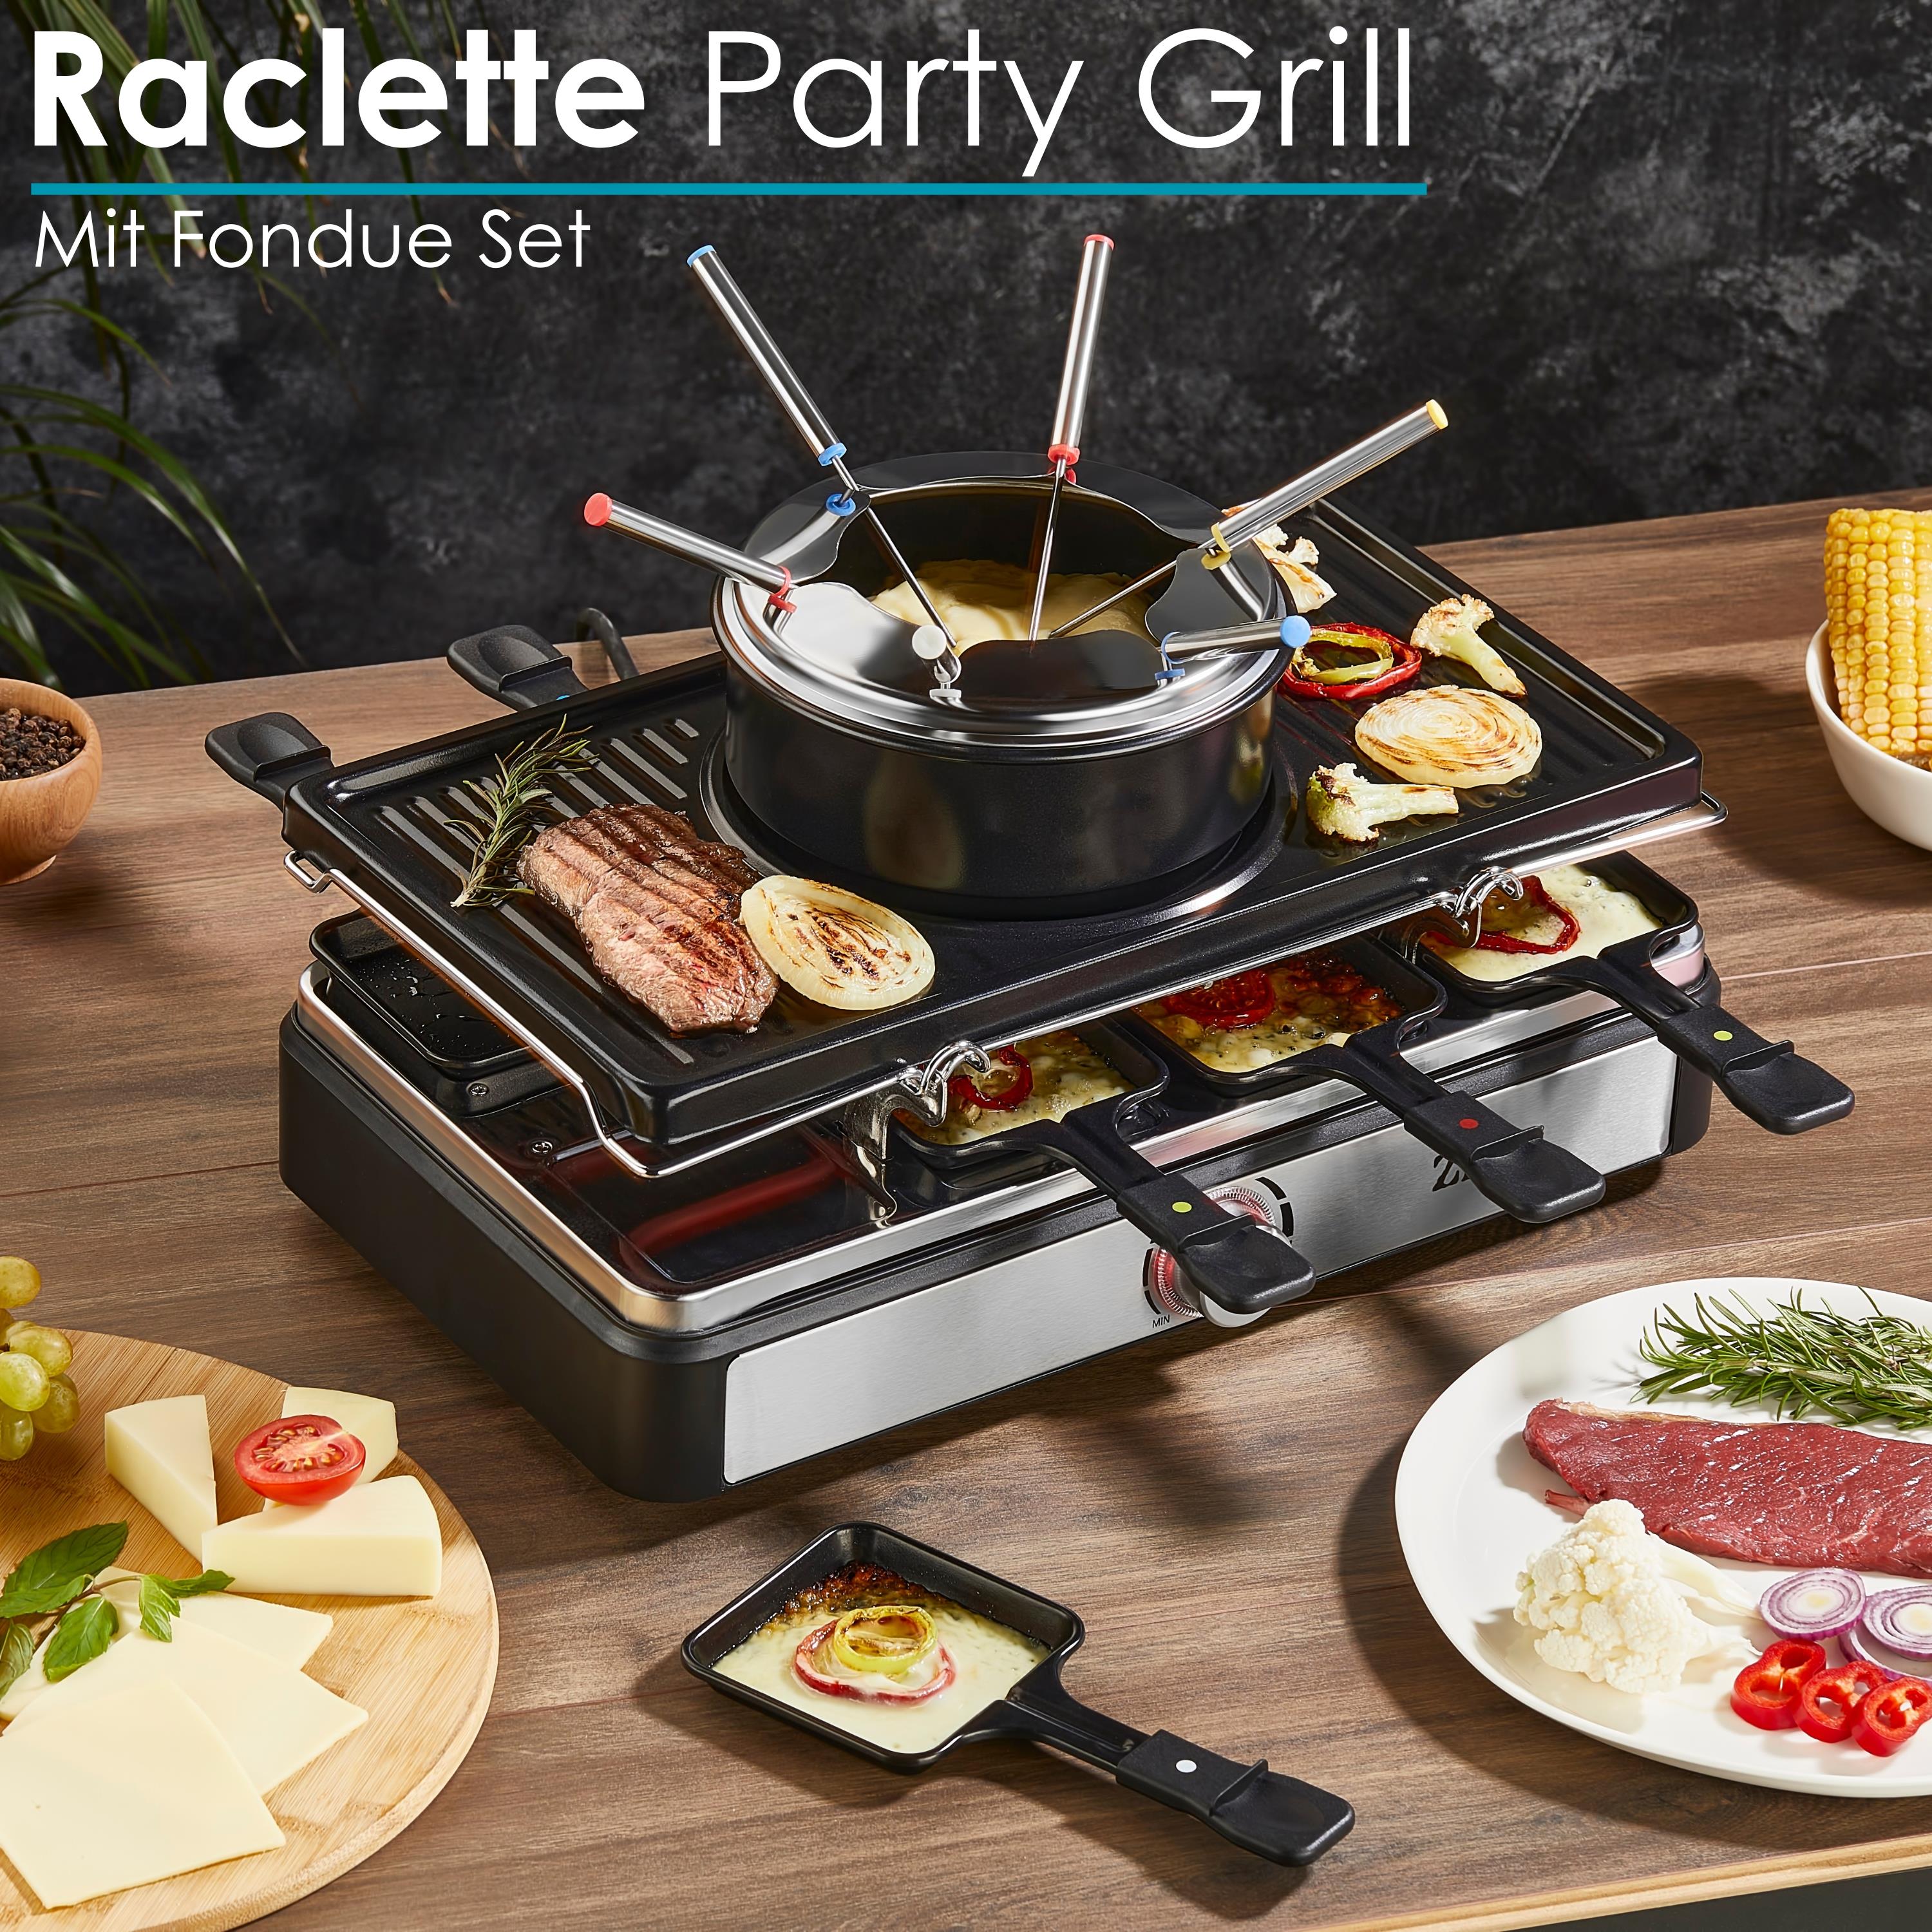 Zilan Raclette Grill mit Fondue Set | Raclette Party Grill für 8 Personen